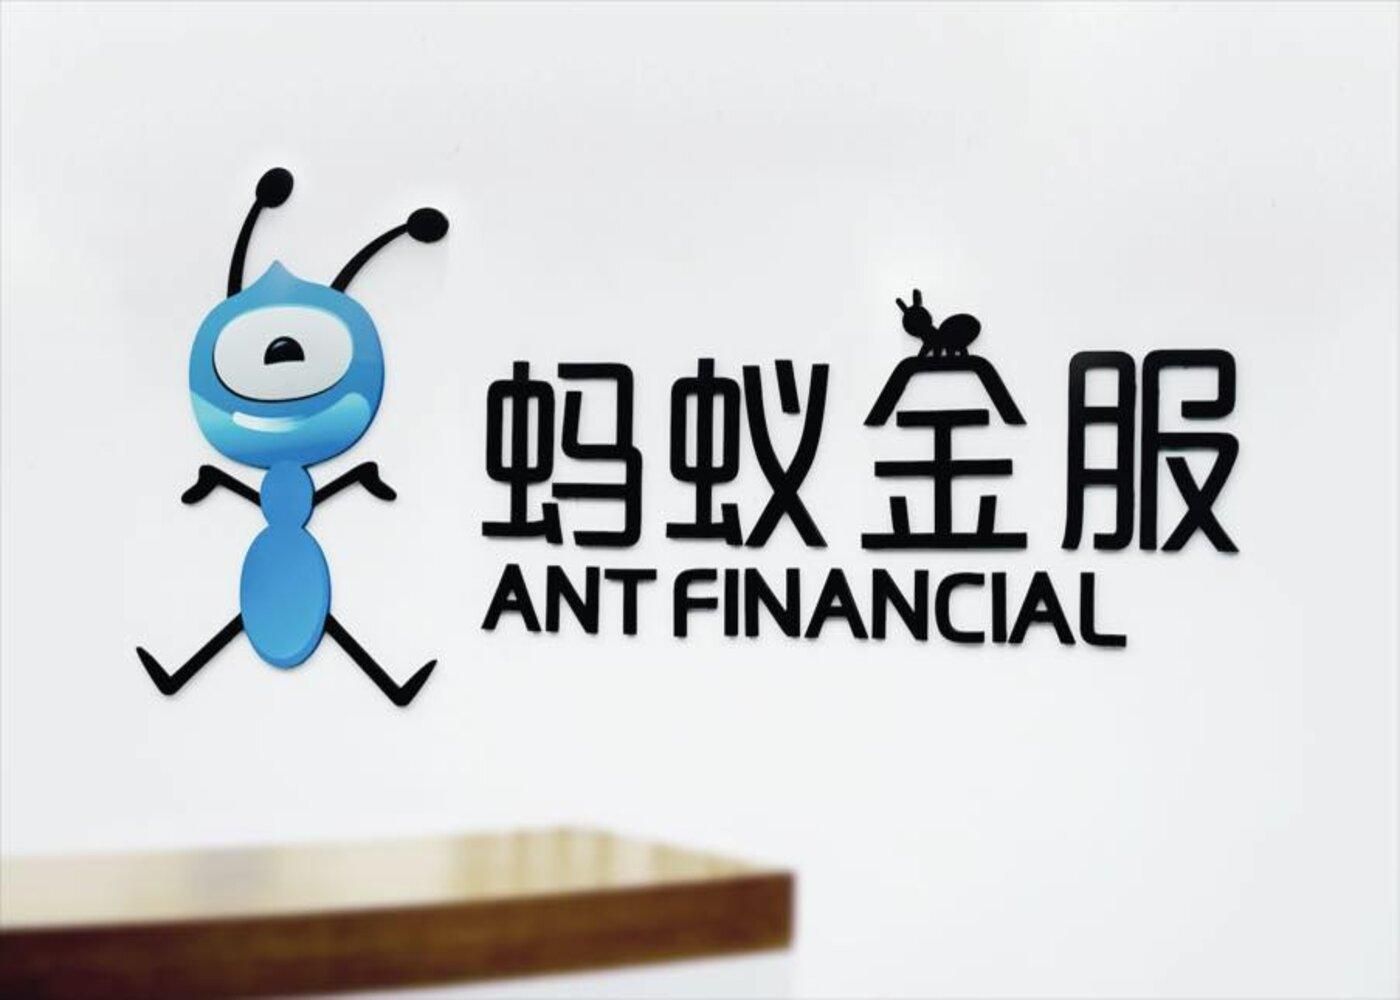 Компания Ant Financial Services Group может изменить название